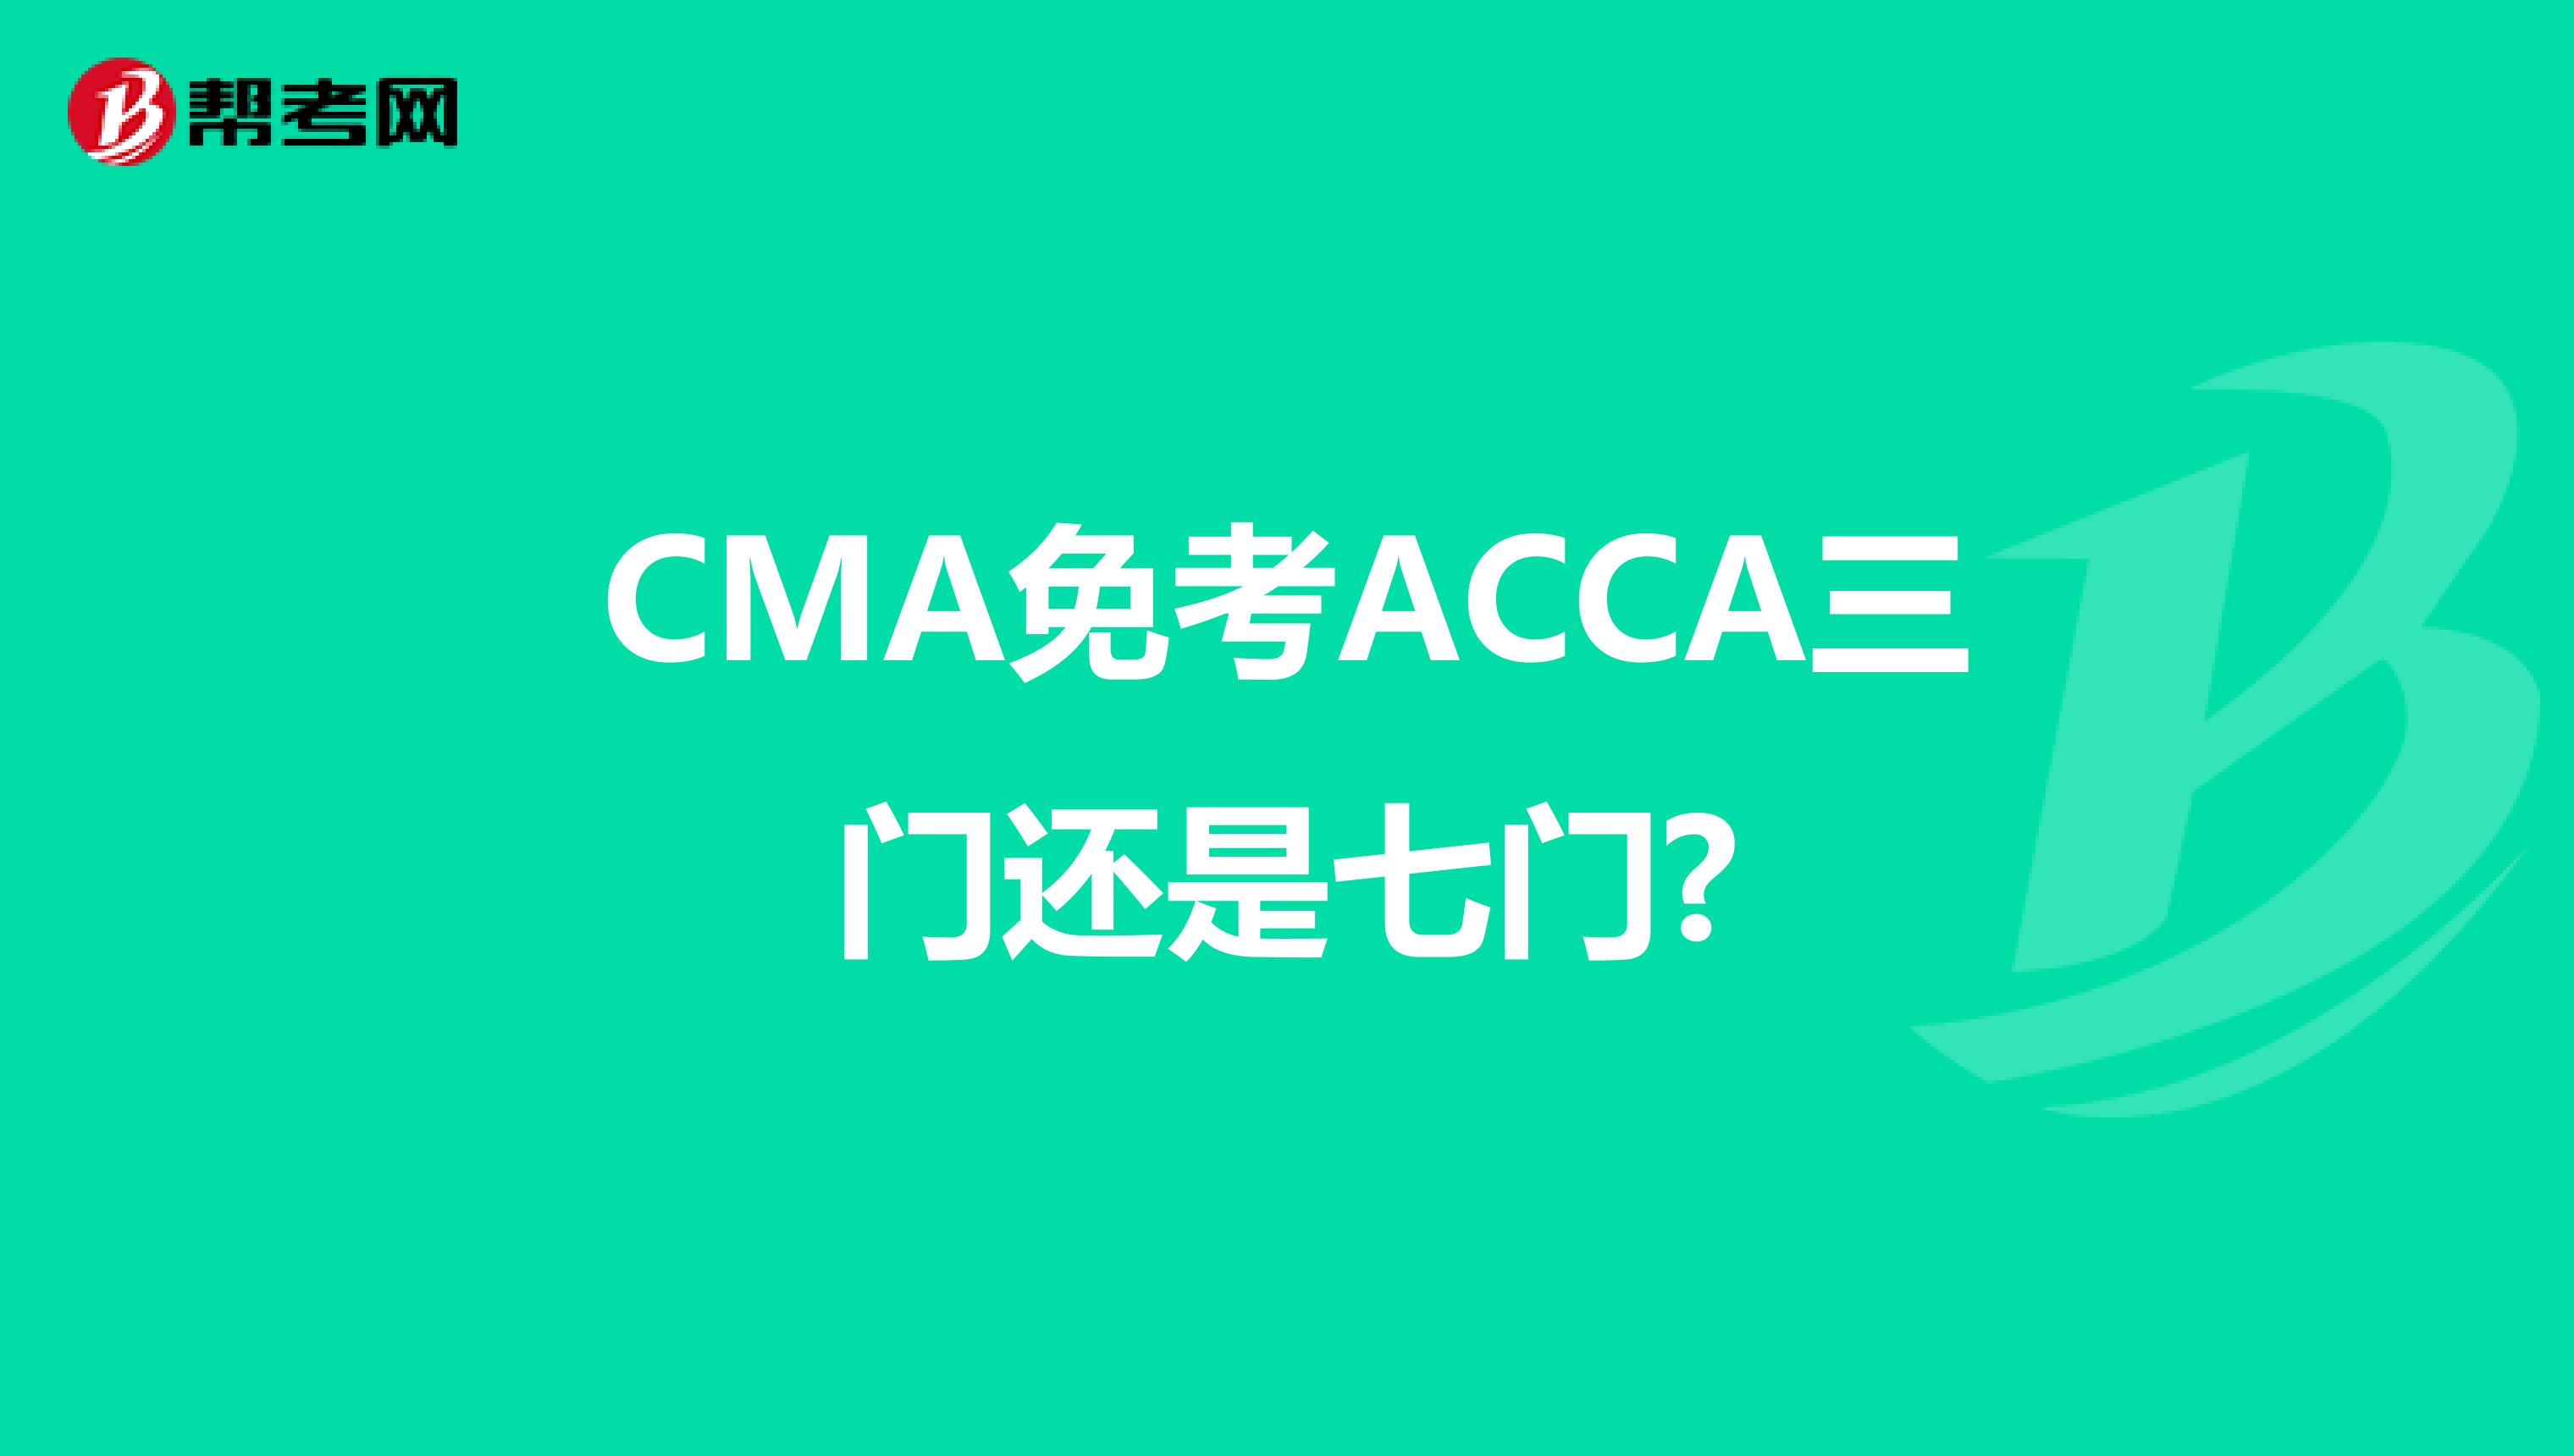 CMA免考ACCA三门还是七门?